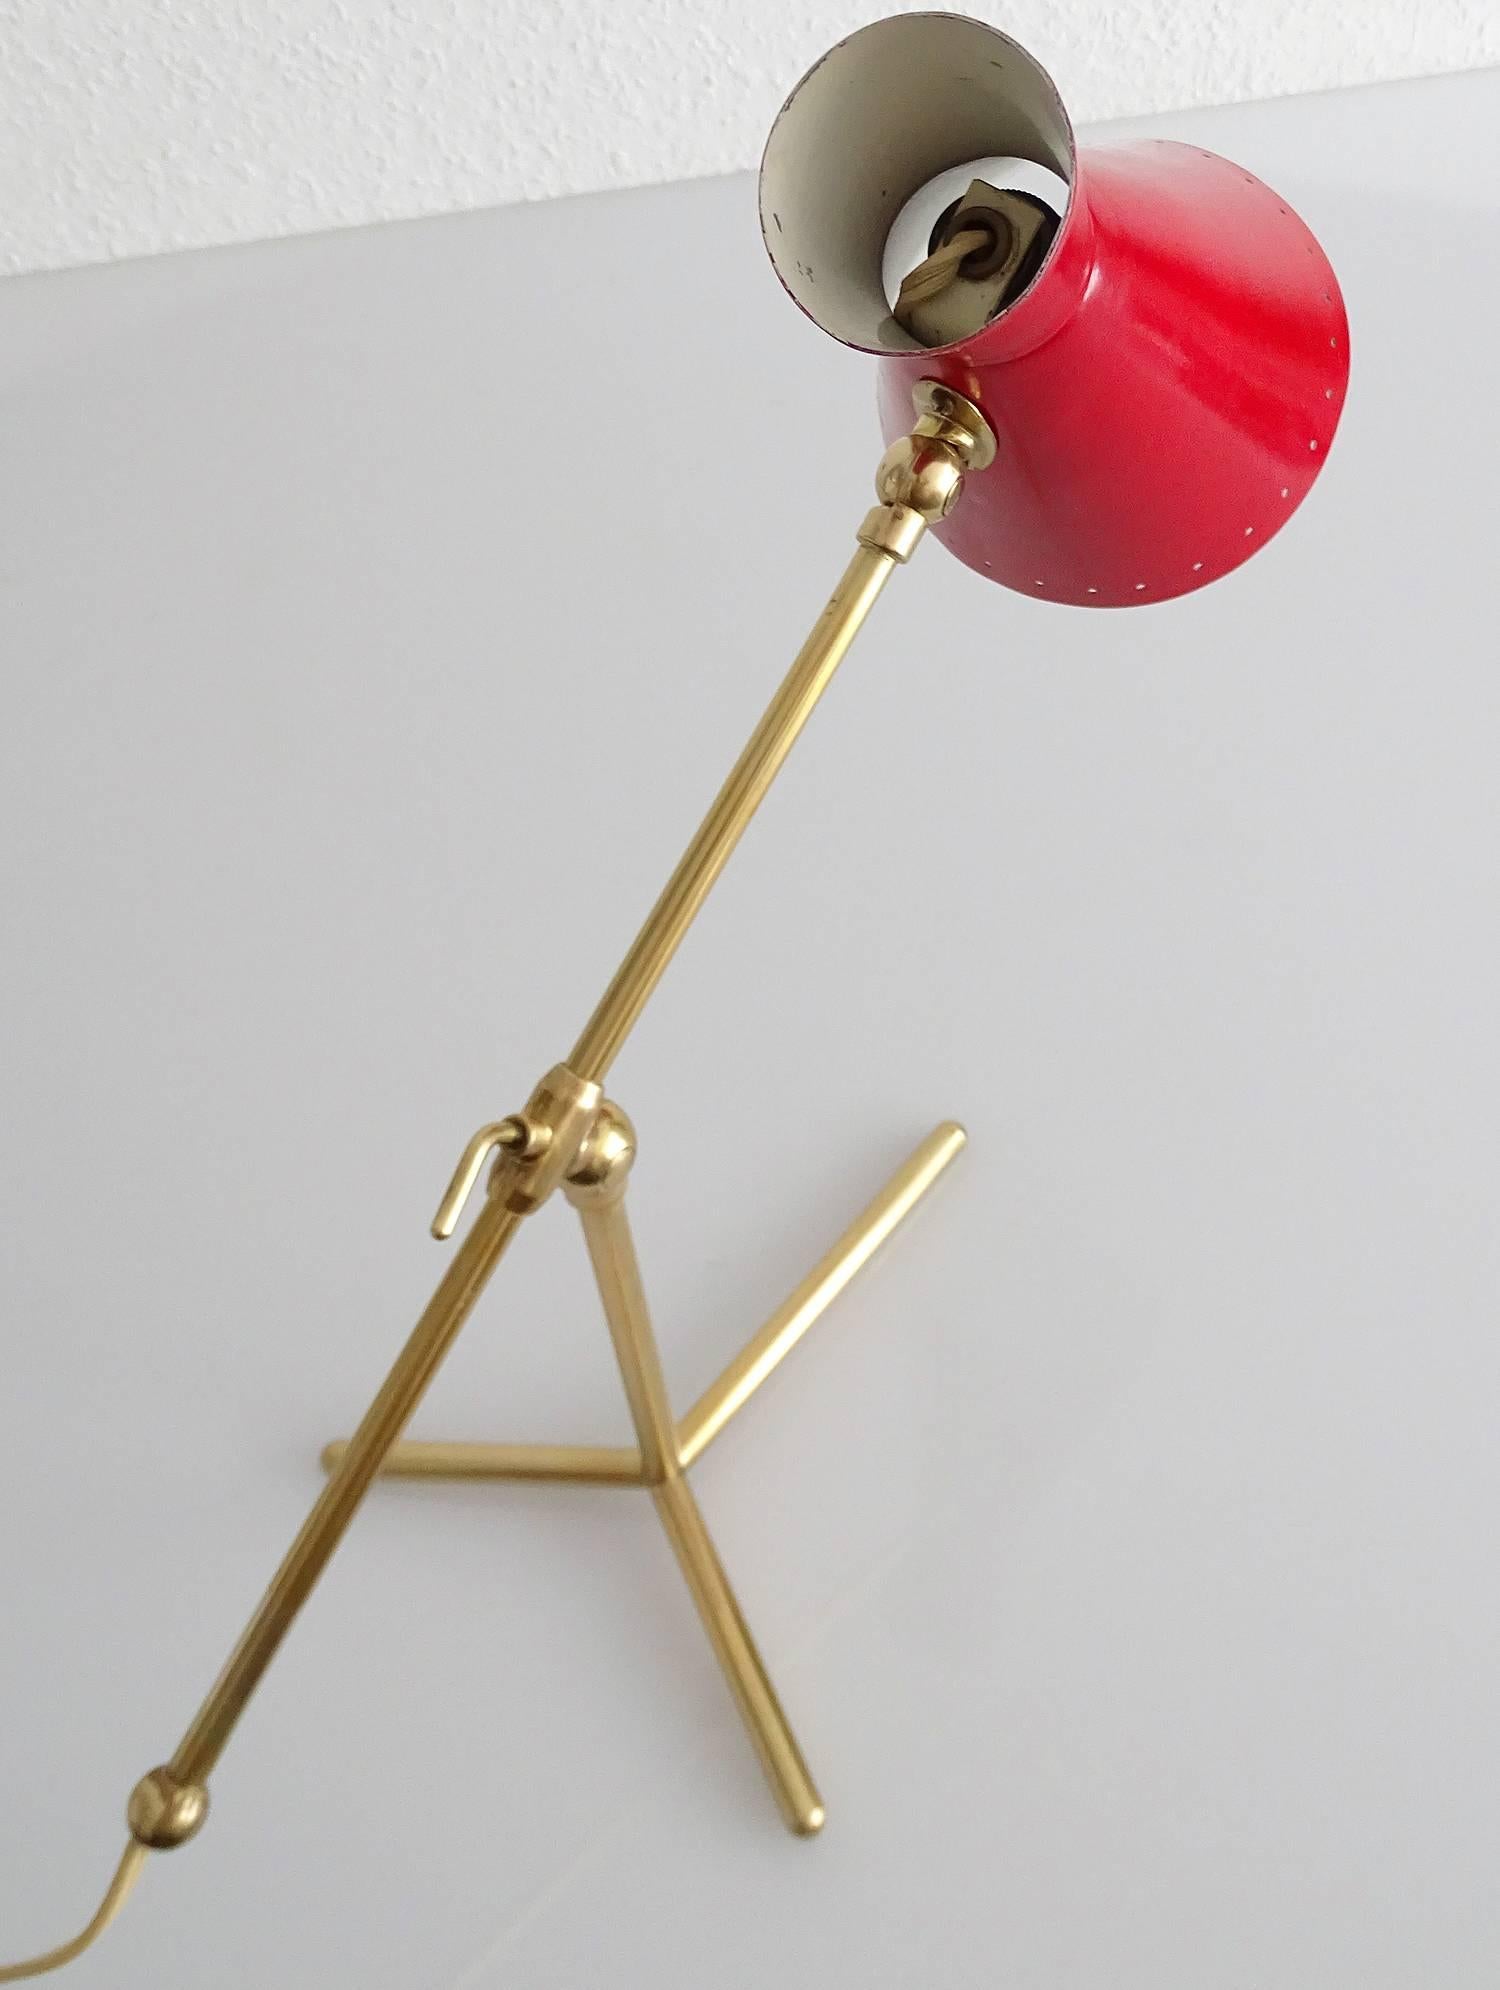 Stilnovo Design Desk Lamp Brass Modernist Design 50s Mid Century Modern Italian 1